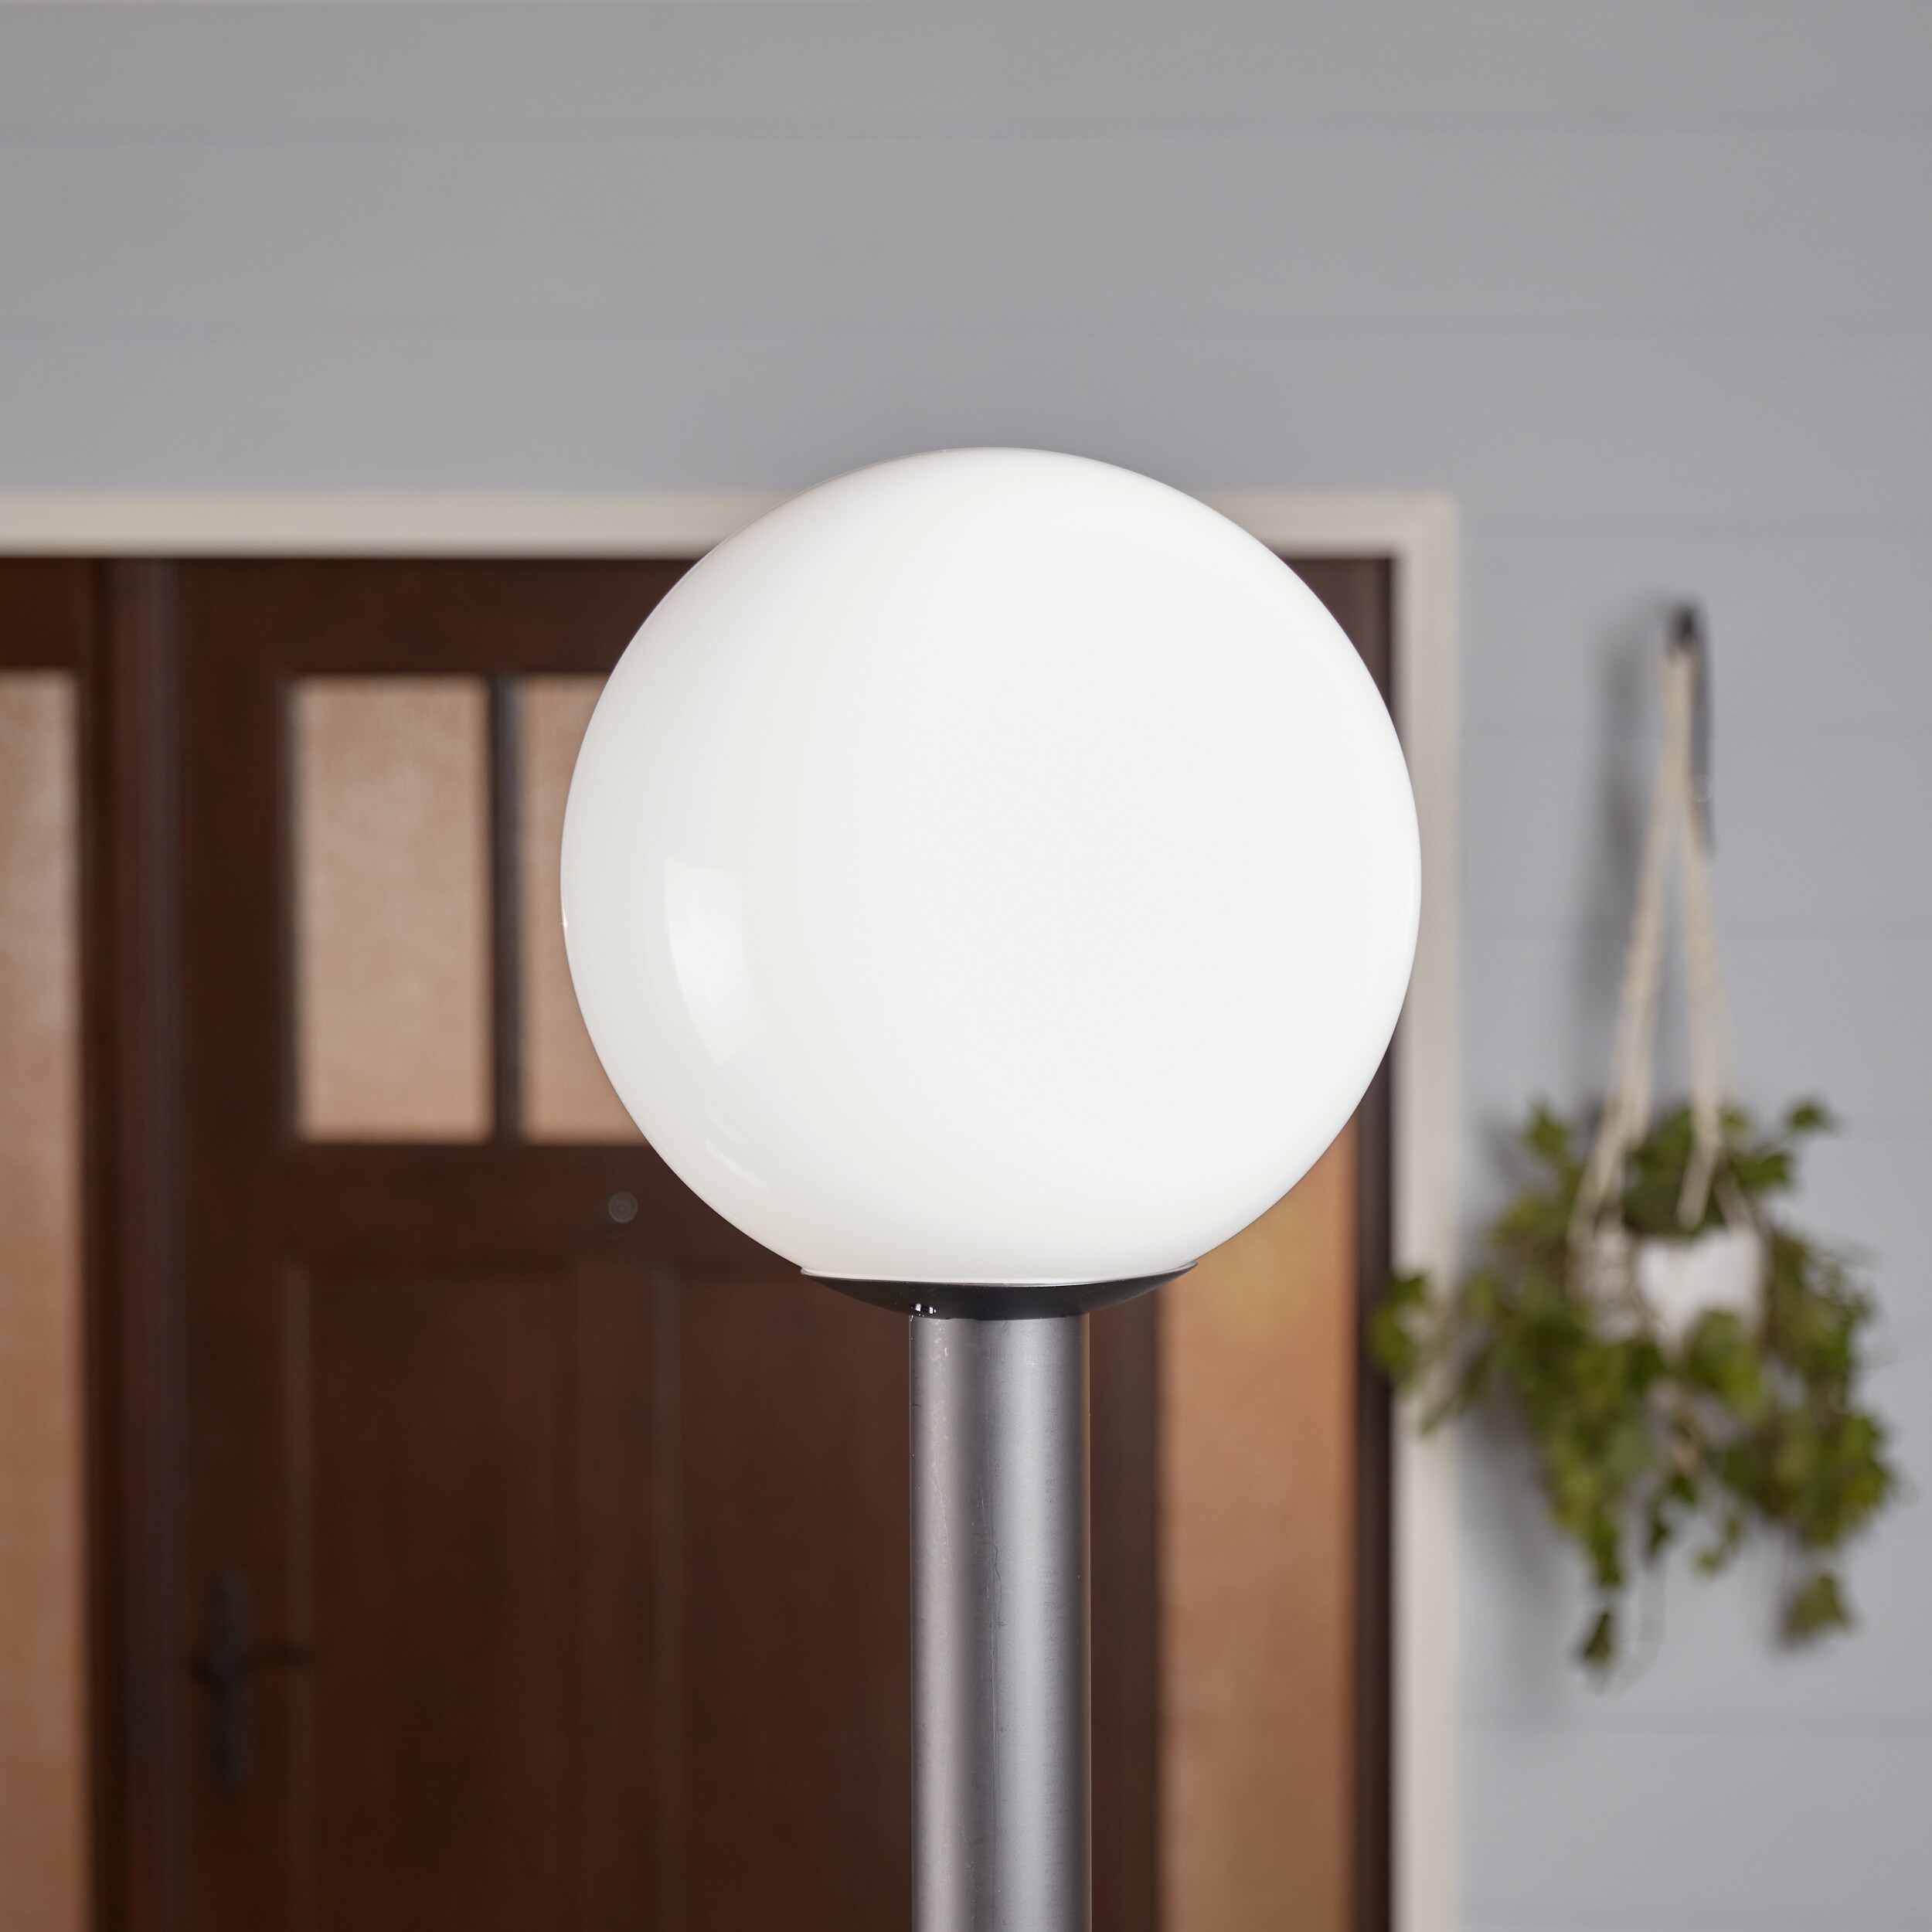 Sea Gull Lighting Outdoor Globe 15-in H White Plastic Hardwired Standard Post Light